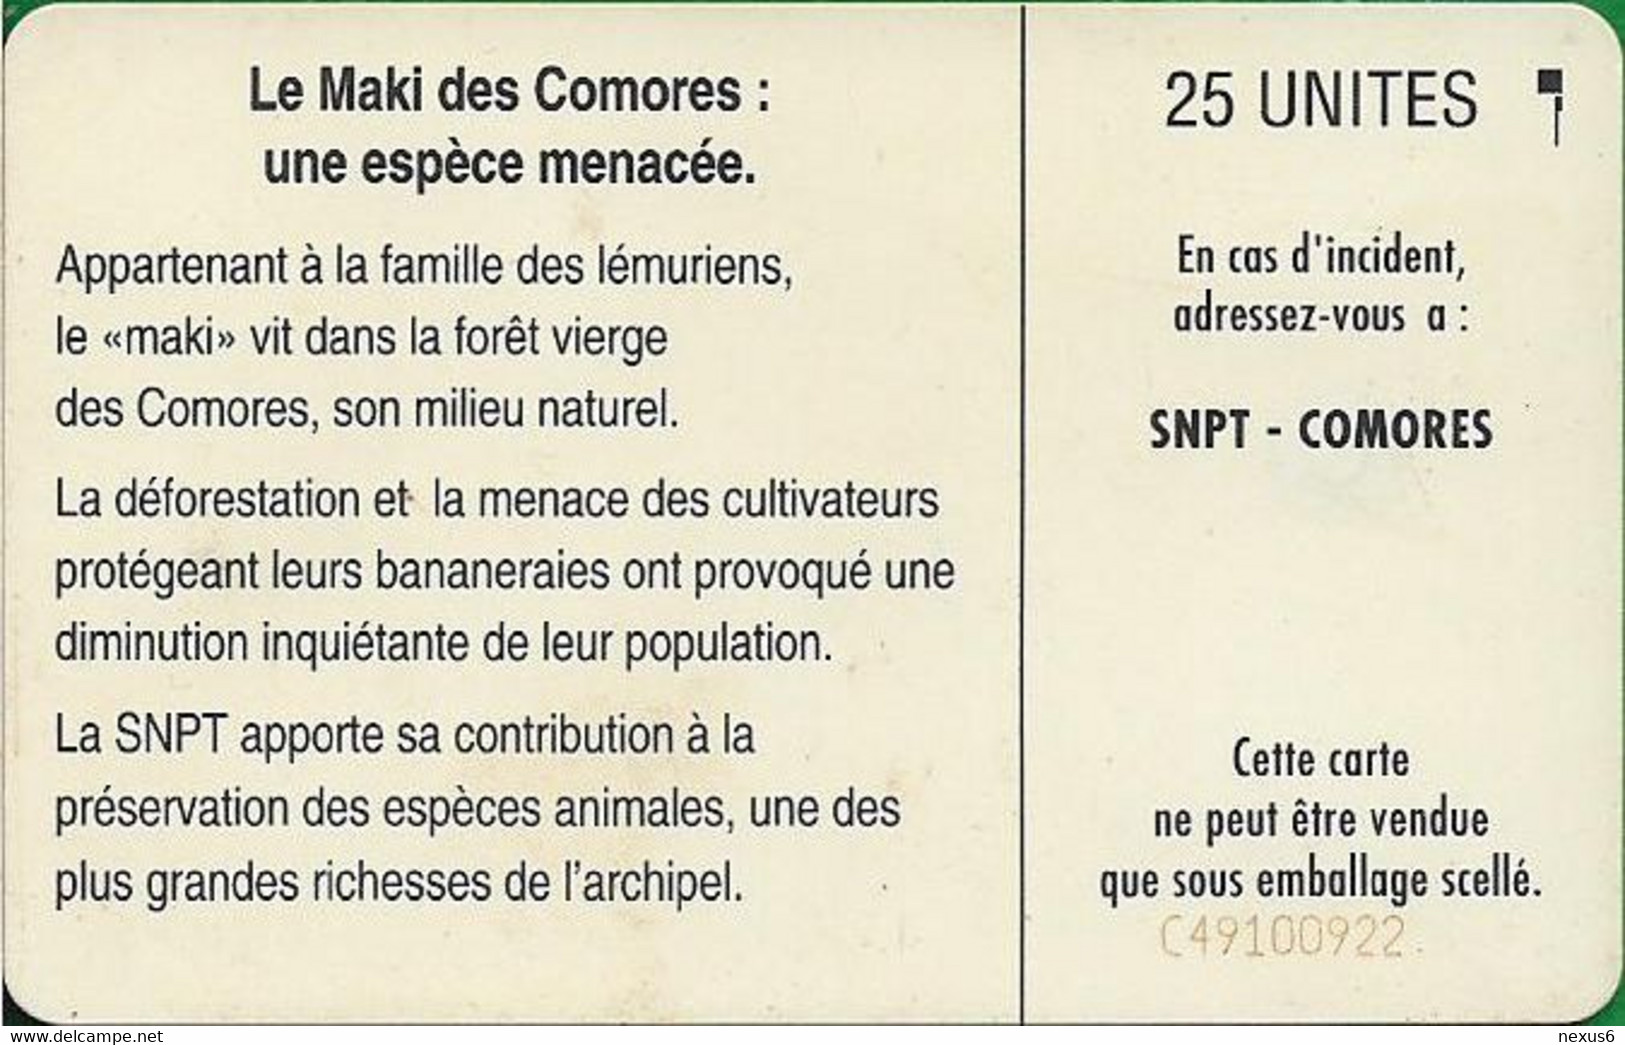 Comoros - S.N.P.T. - Maki (Cn. C49100922), SC5, 1994, 25Units, Used - Comoren